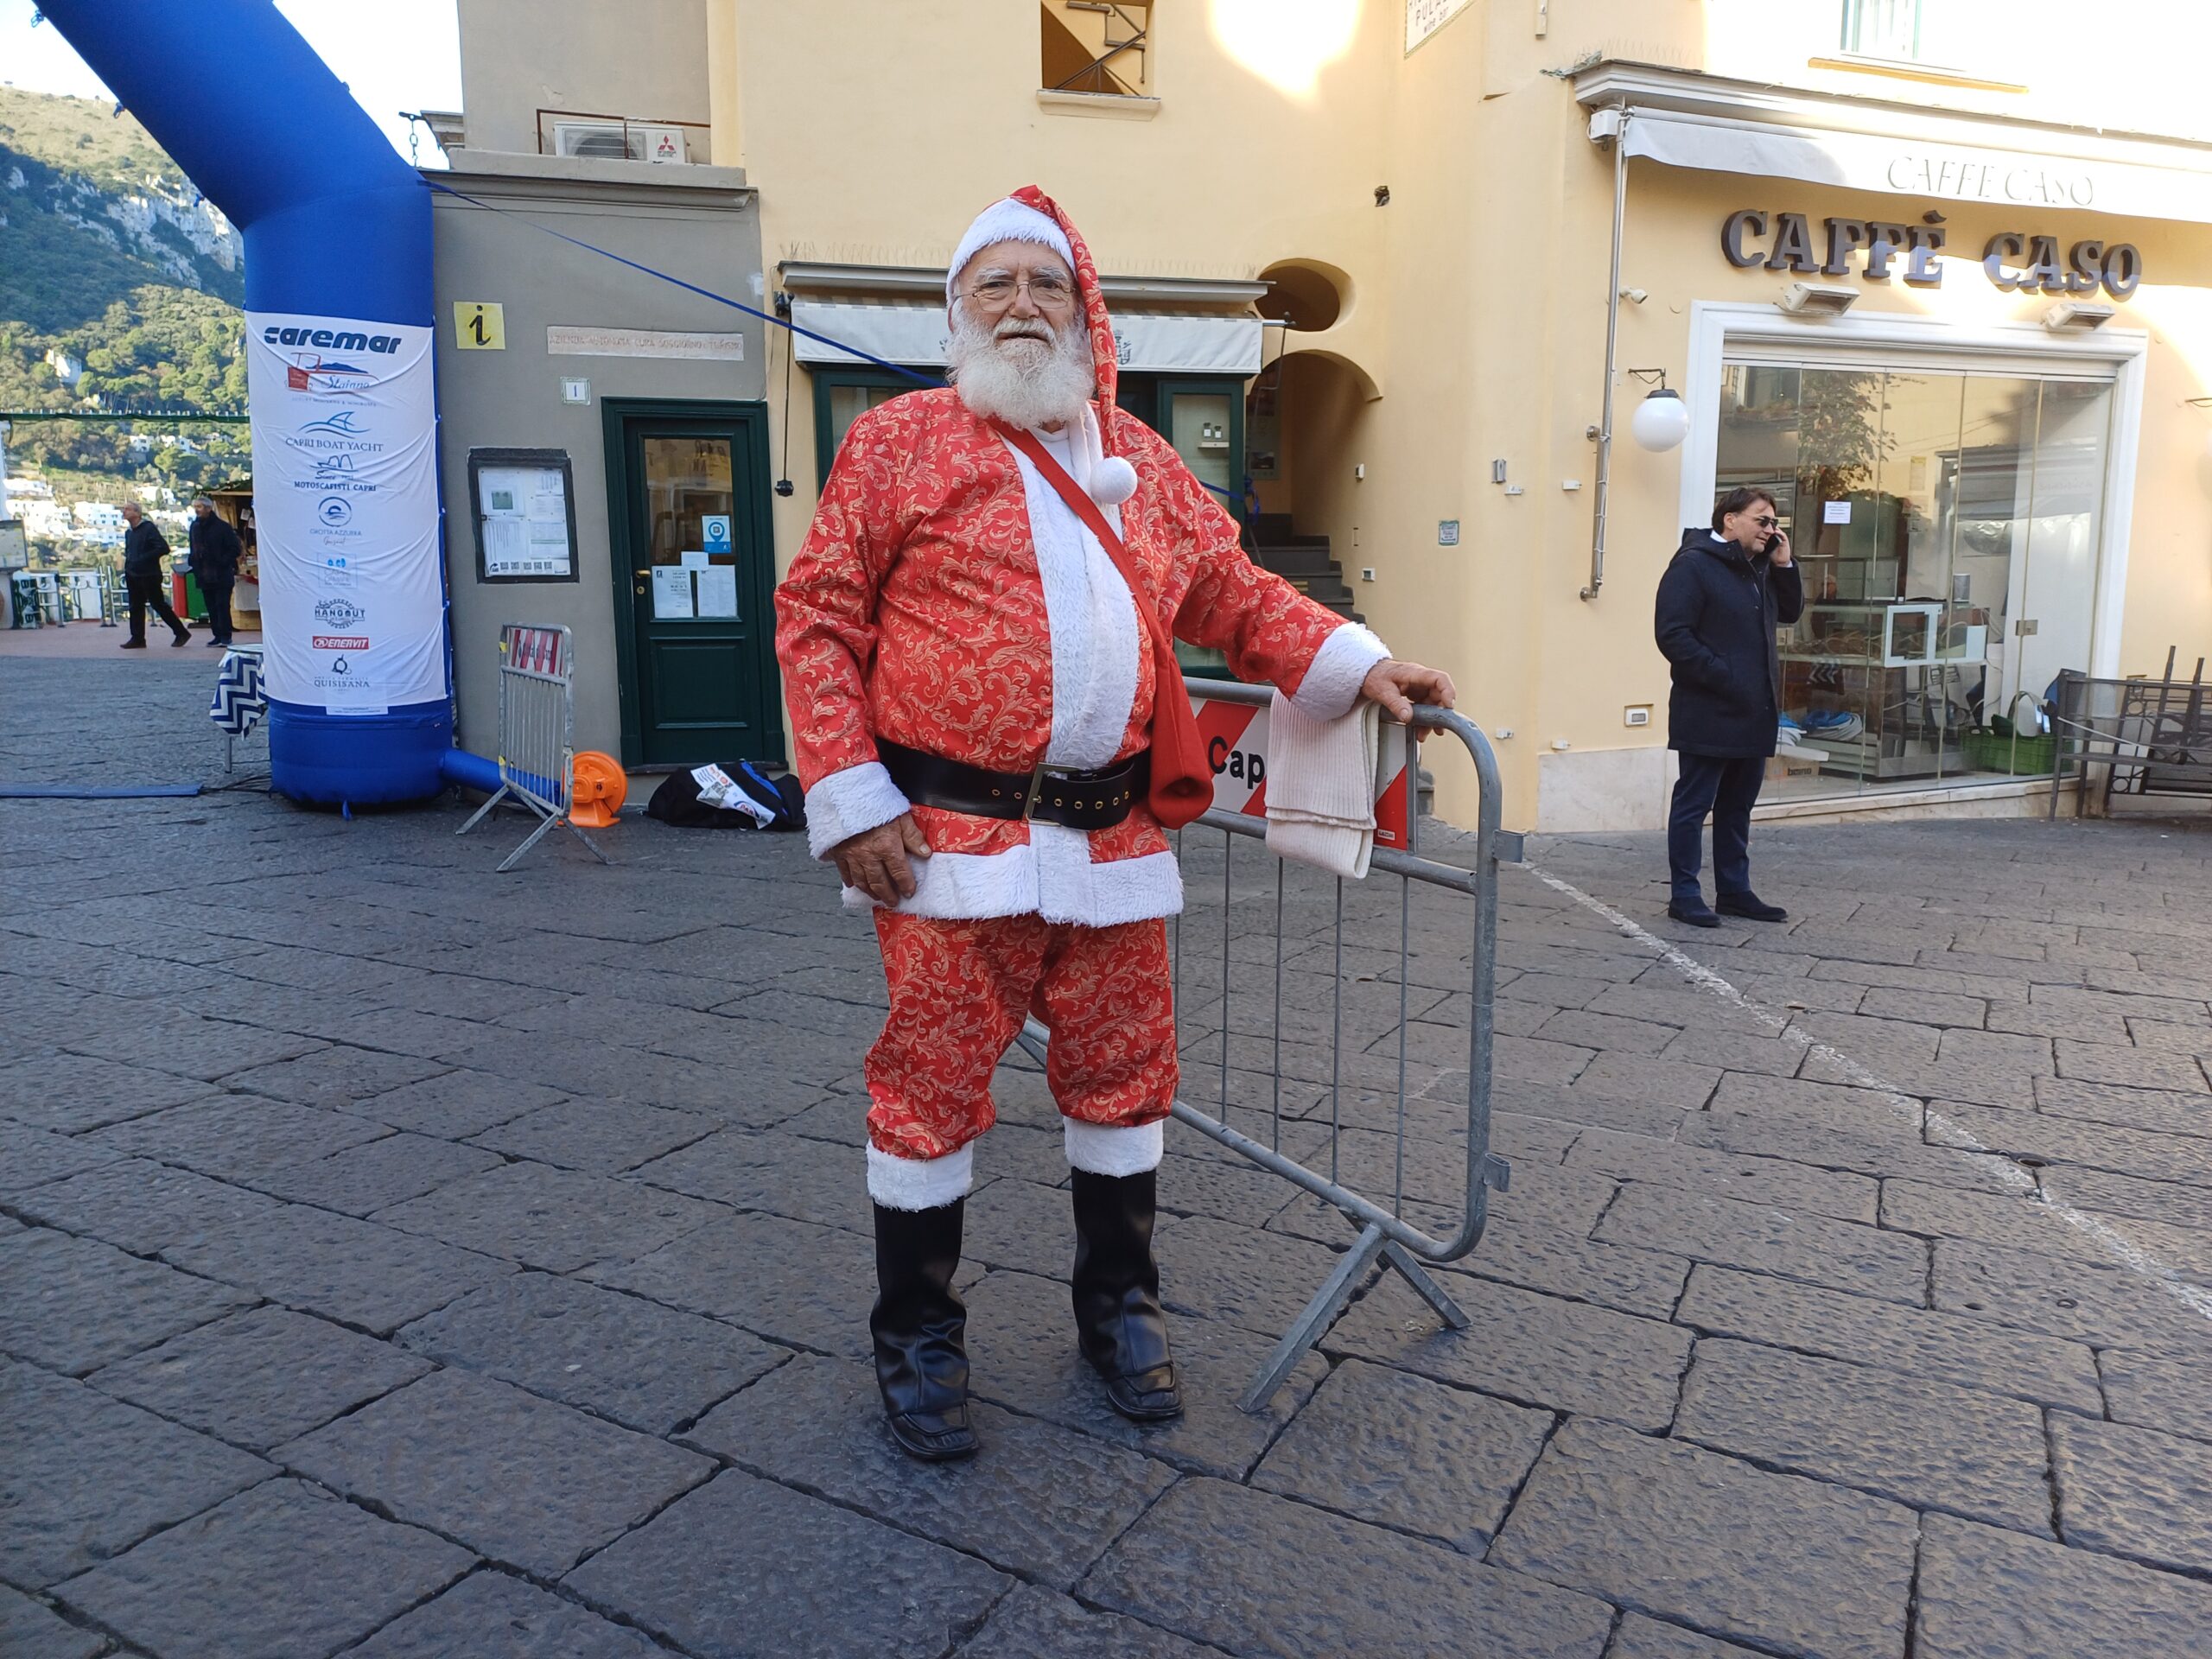 Nella Piazzetta di Capri l’arrivo di Babbo Natale